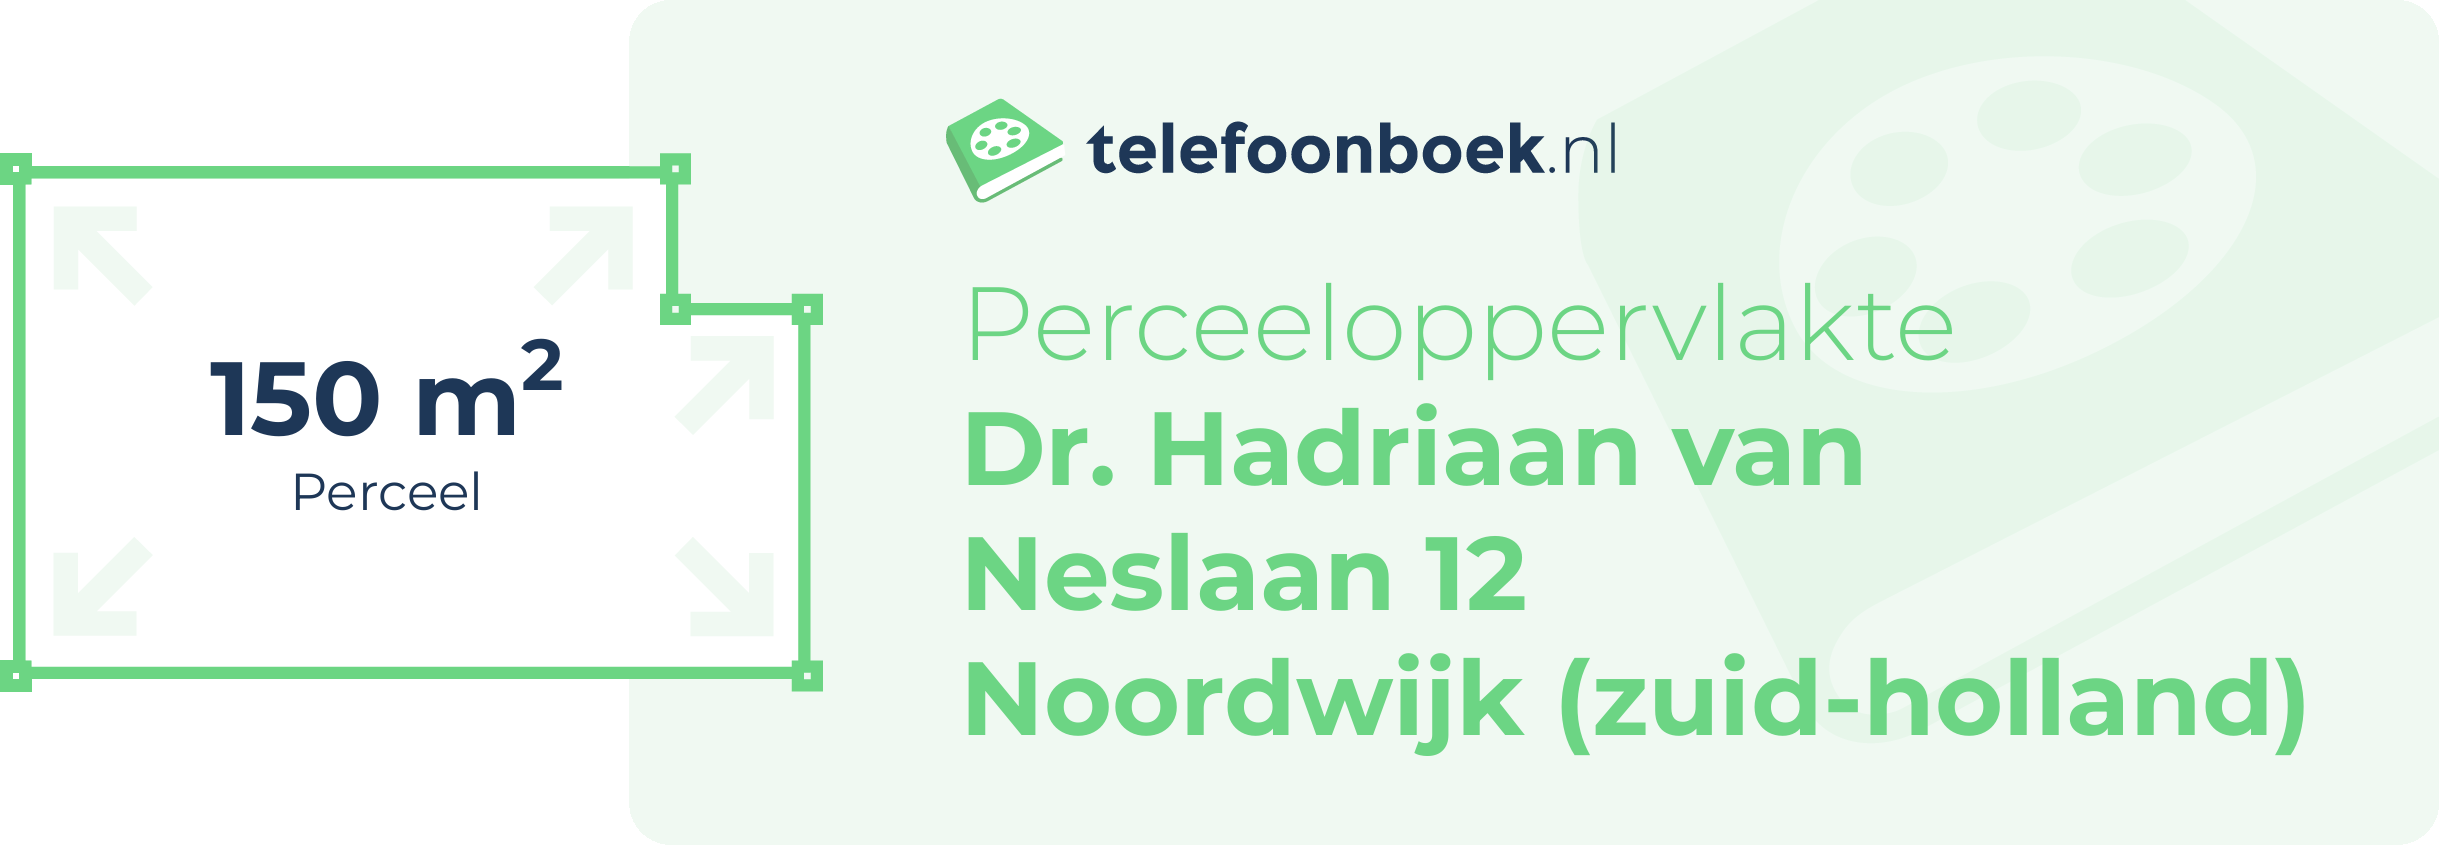 Perceeloppervlakte Dr. Hadriaan Van Neslaan 12 Noordwijk (Zuid-Holland)